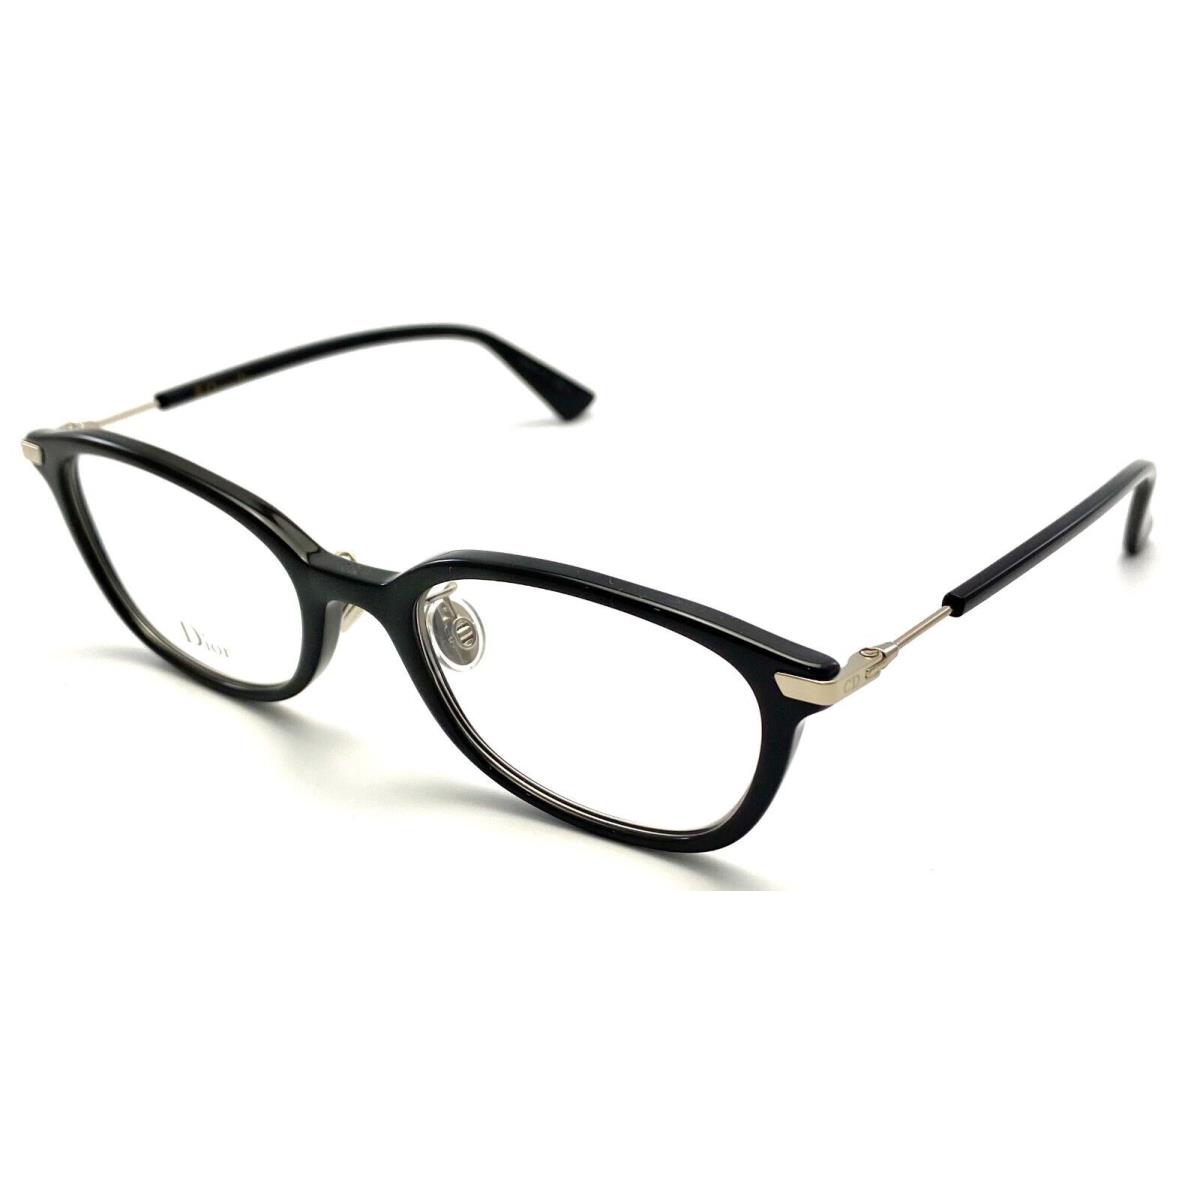 Dior DIORESSENCE18F 807 Black Eyeglasses Frame 51-17 145 - Frame: Black